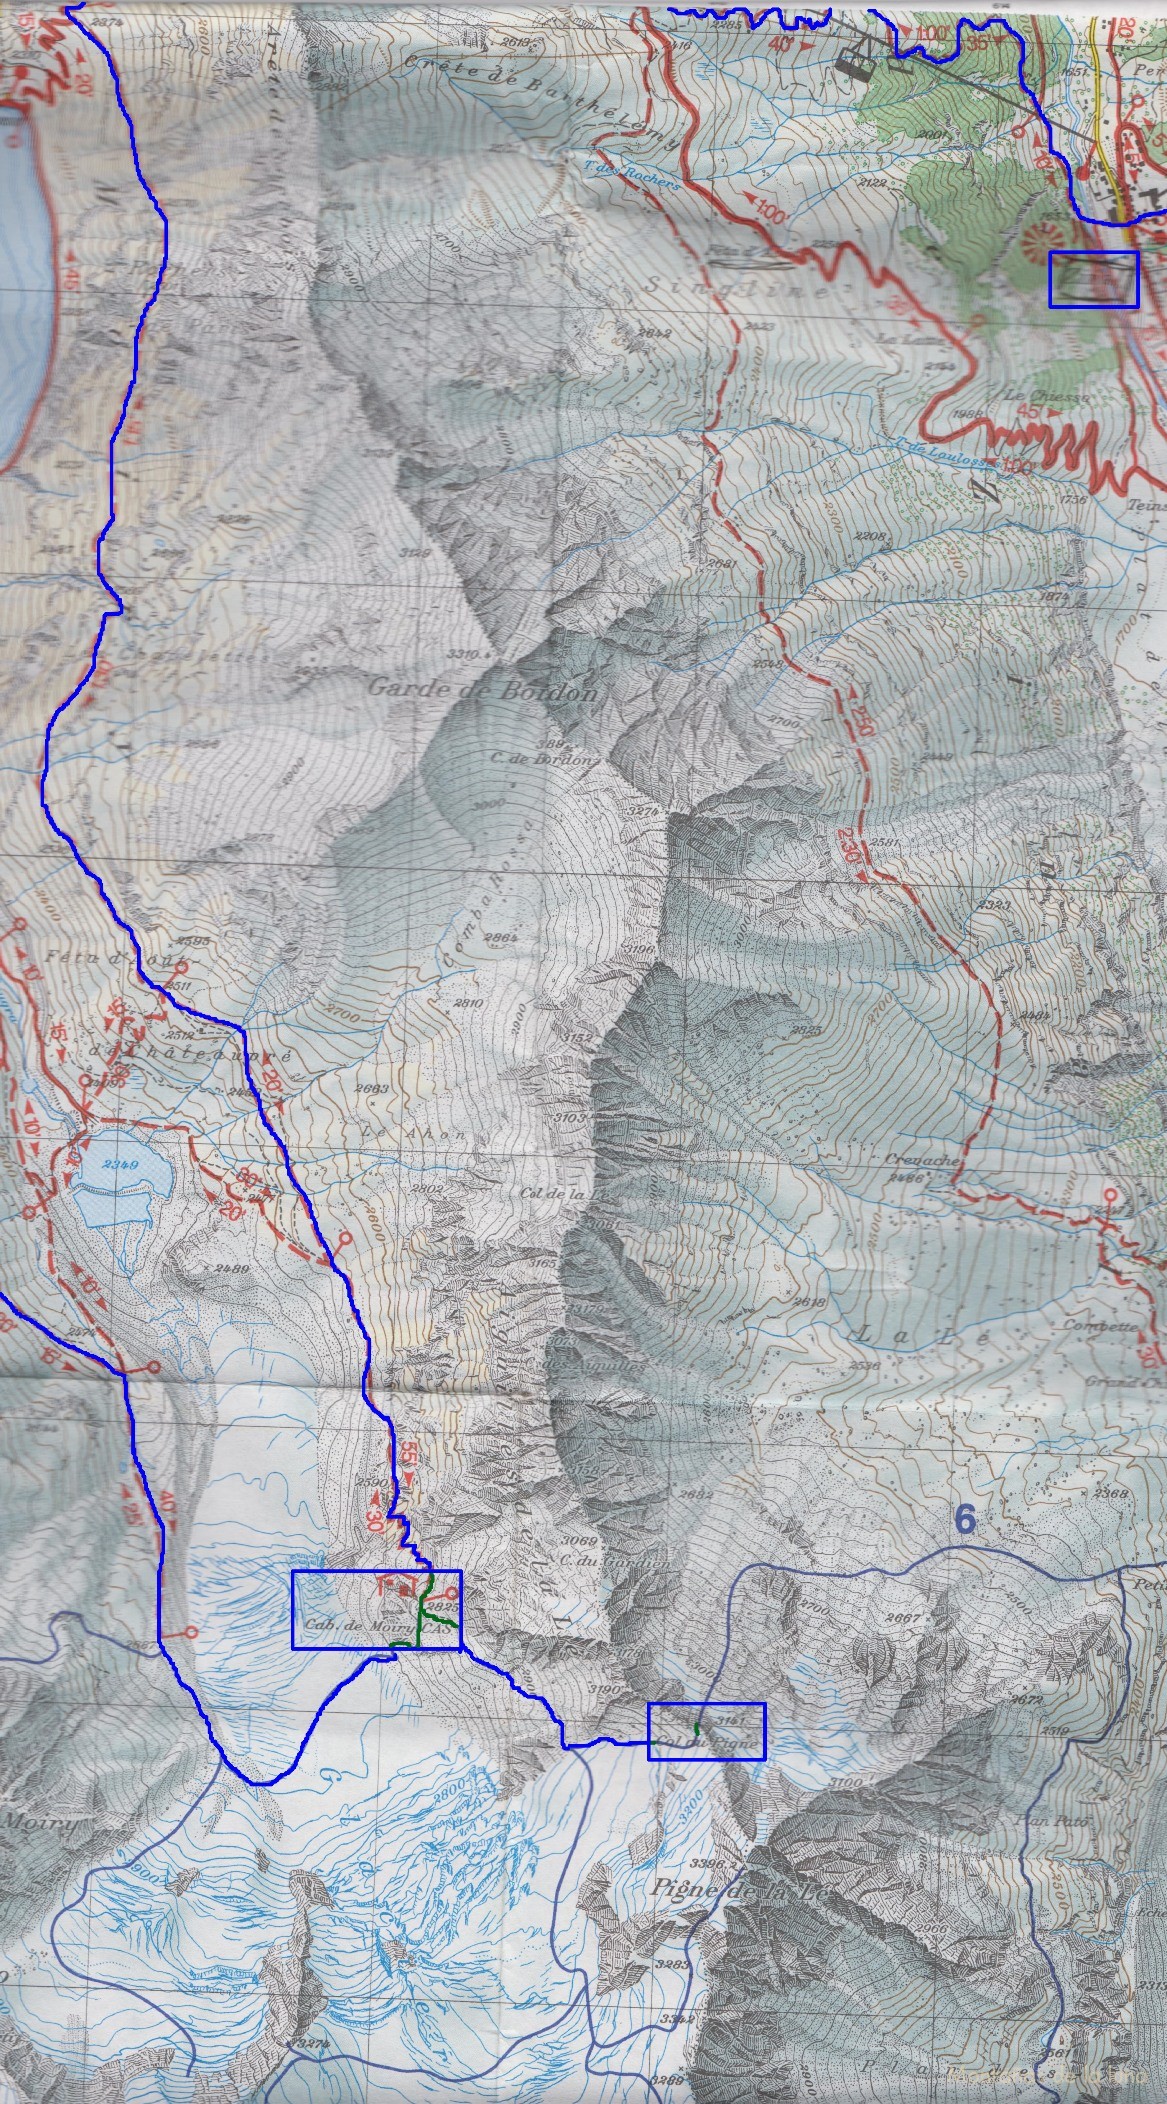 Croquis del recorrido de la 3º y 4º Etapa del Tour de la Val d’Anniviers Zinal-Cabaña de Moiry. Aparece la ascensión al Coll du Pigne desde la Cabaña de Moiry, y el descenso a Grimentz cruzando el Glaciar de Moiry.